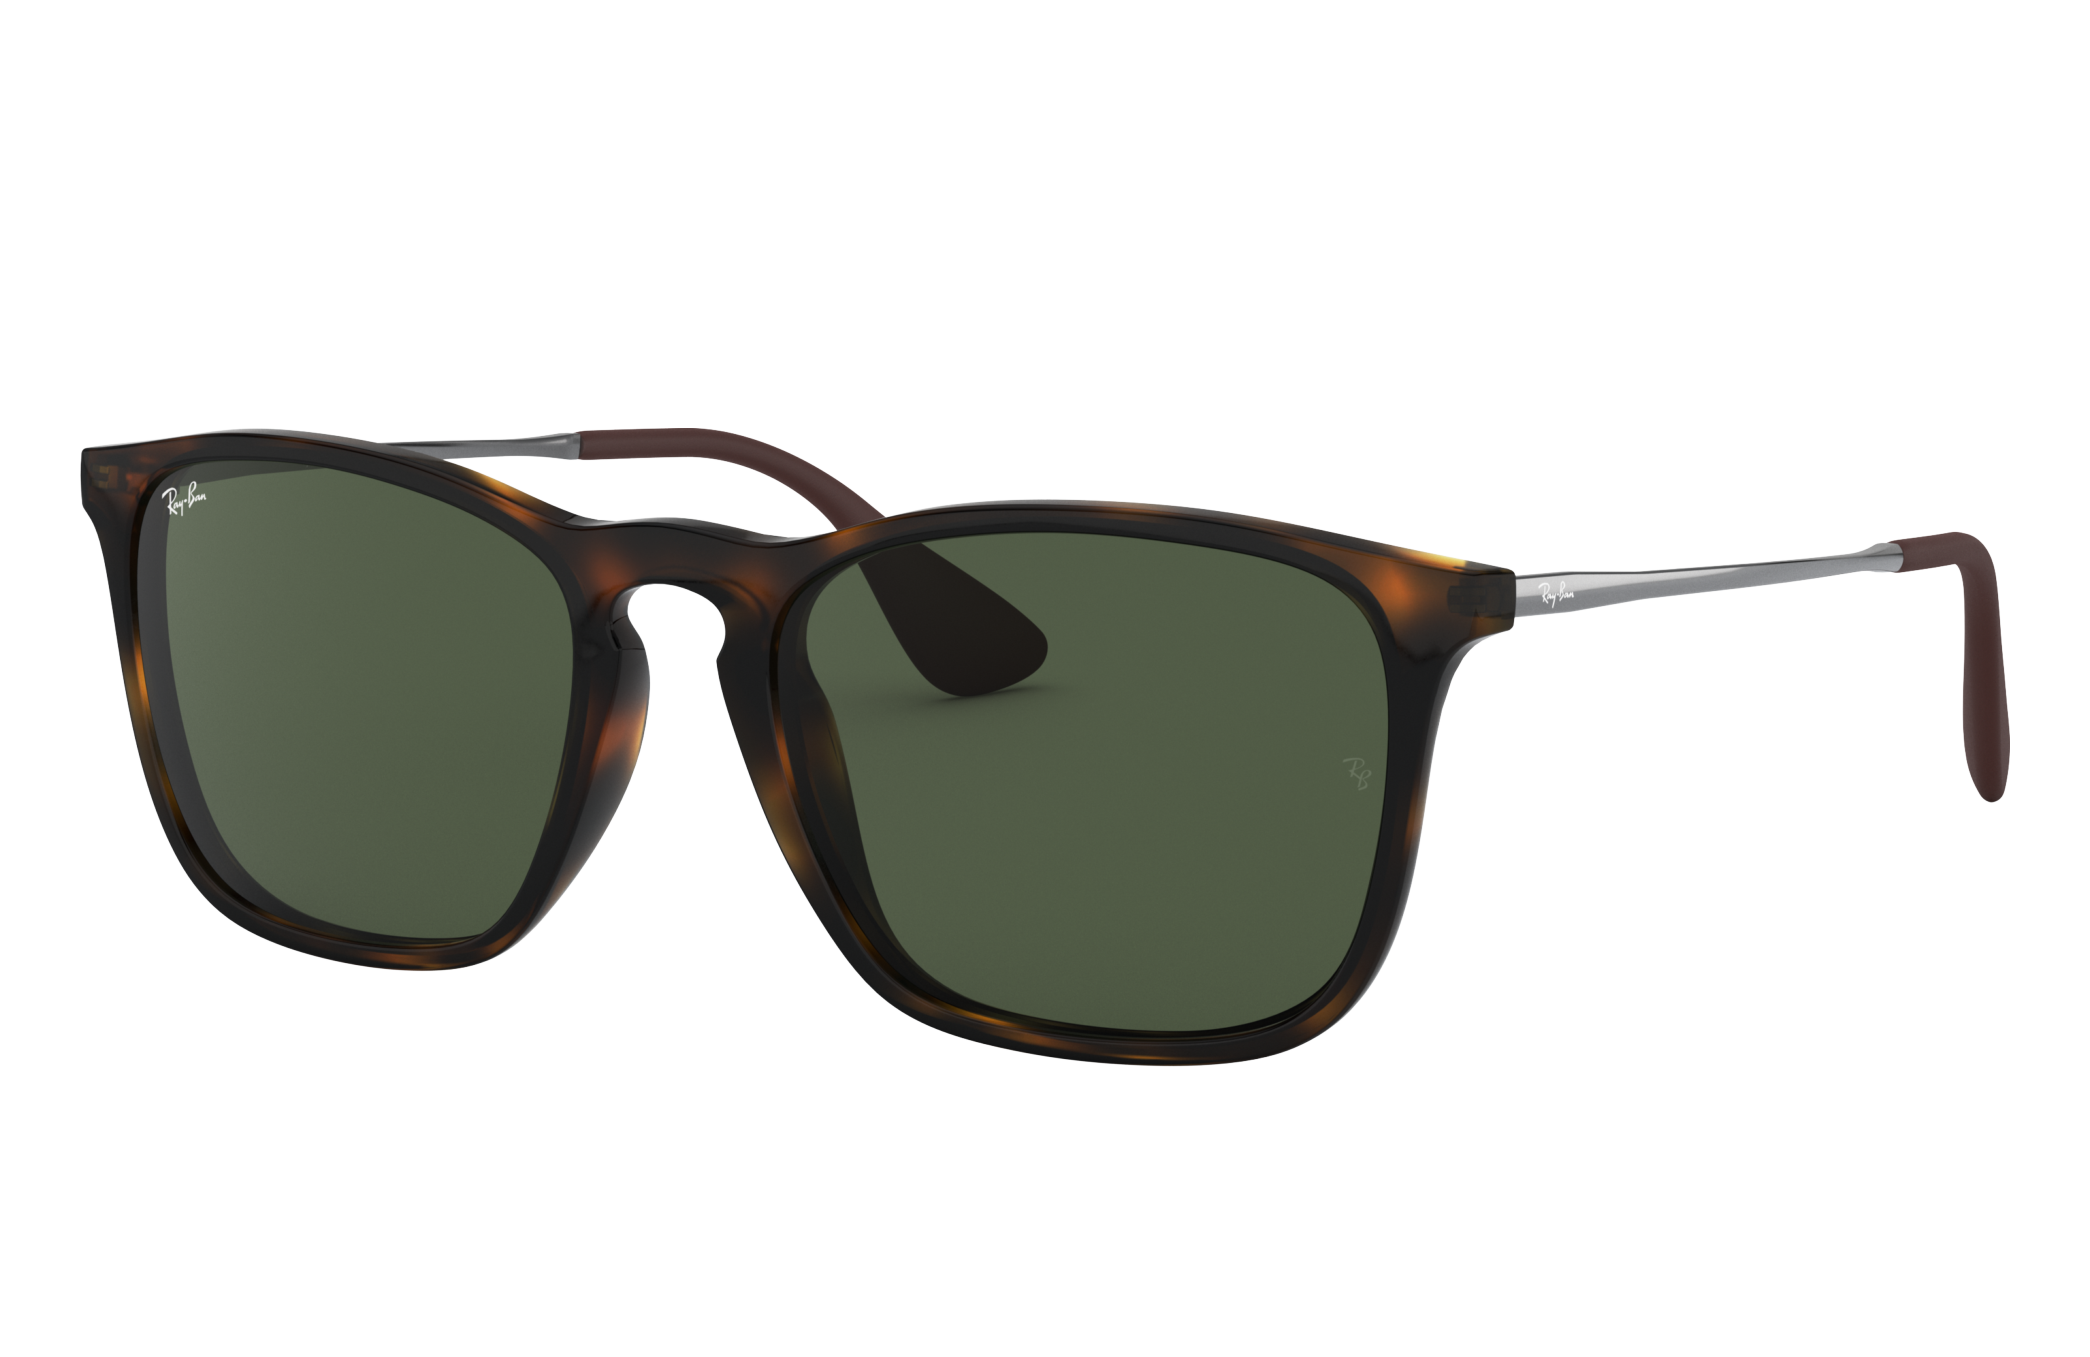 Chris Sunglasses in Tartaruga and Verde | Ray-Ban®